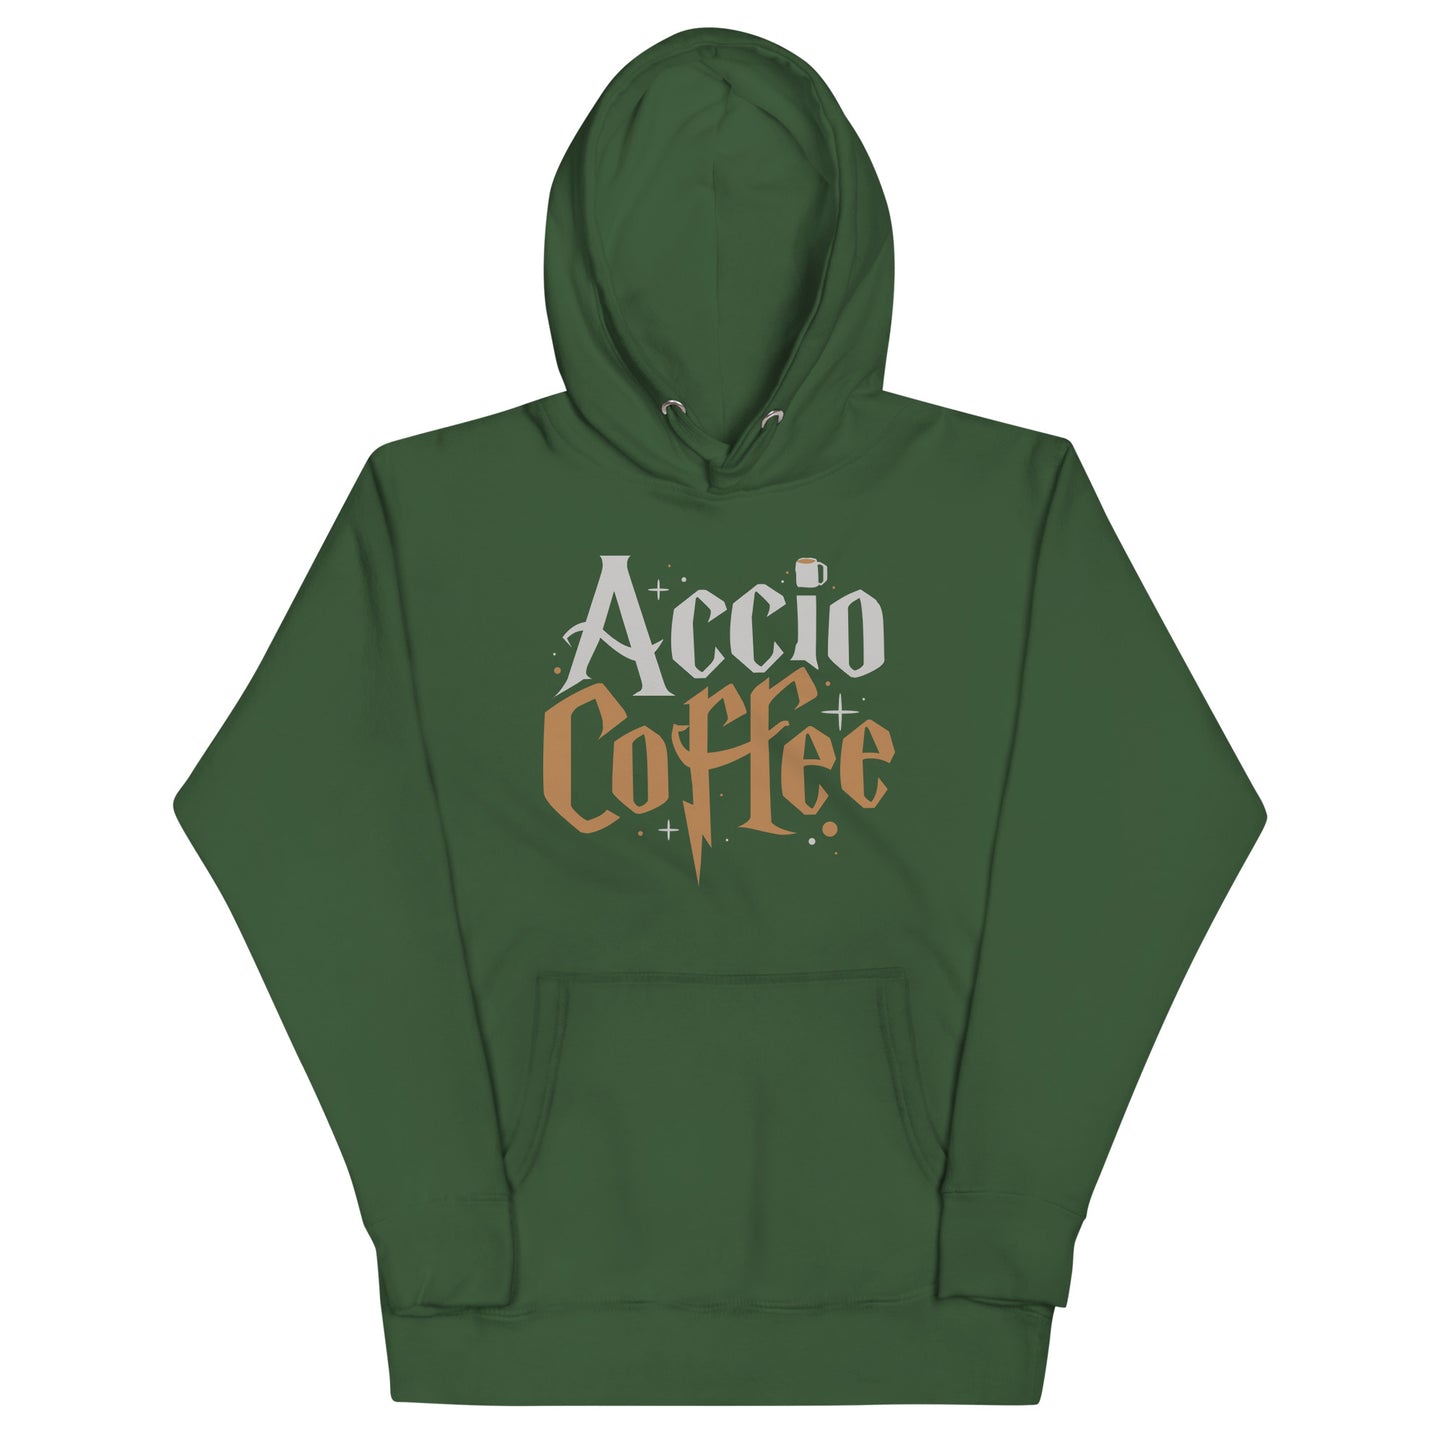 Accio Coffee Unisex Hoodie